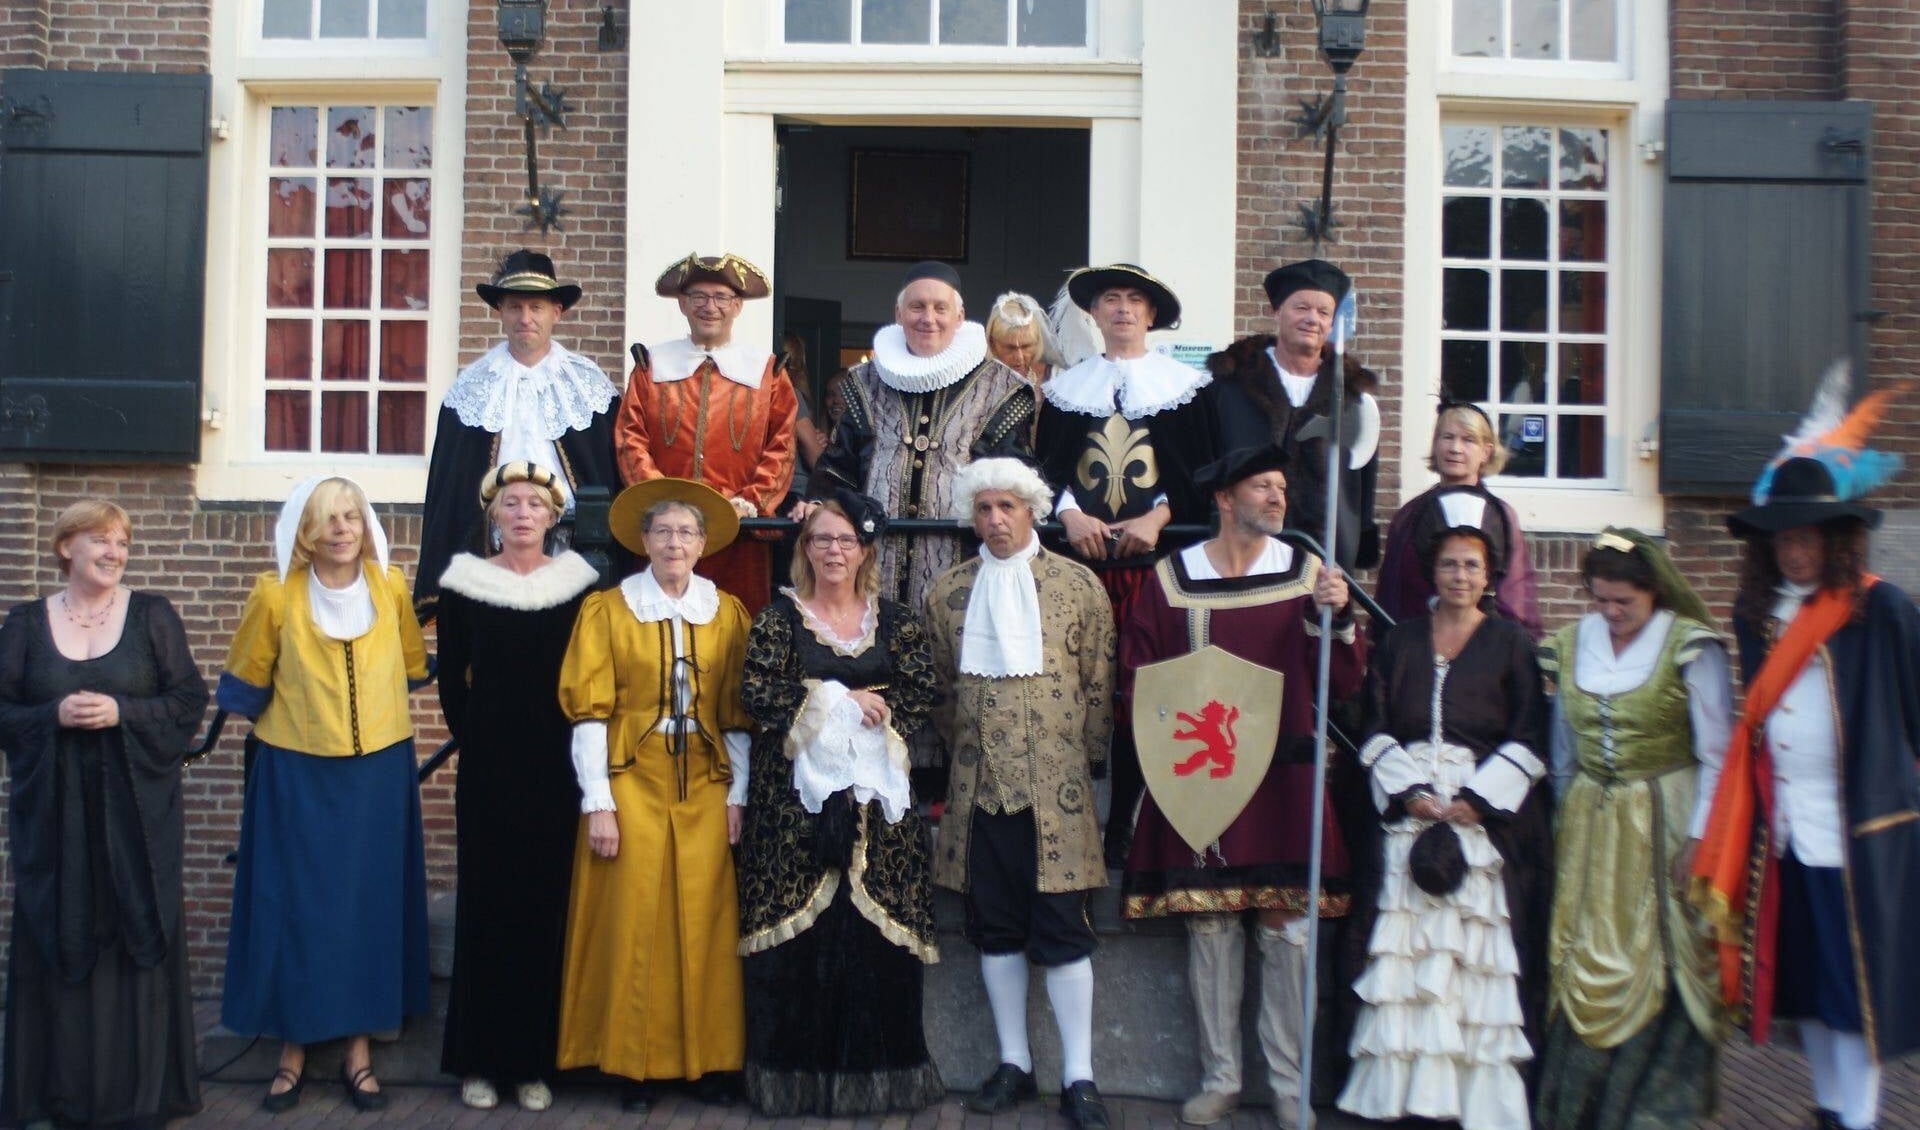 College van Molenwaard en vrijwilligers Oude Hollandse Waterlinie in historische kleding voor het stadhuis van Nieuwpoort